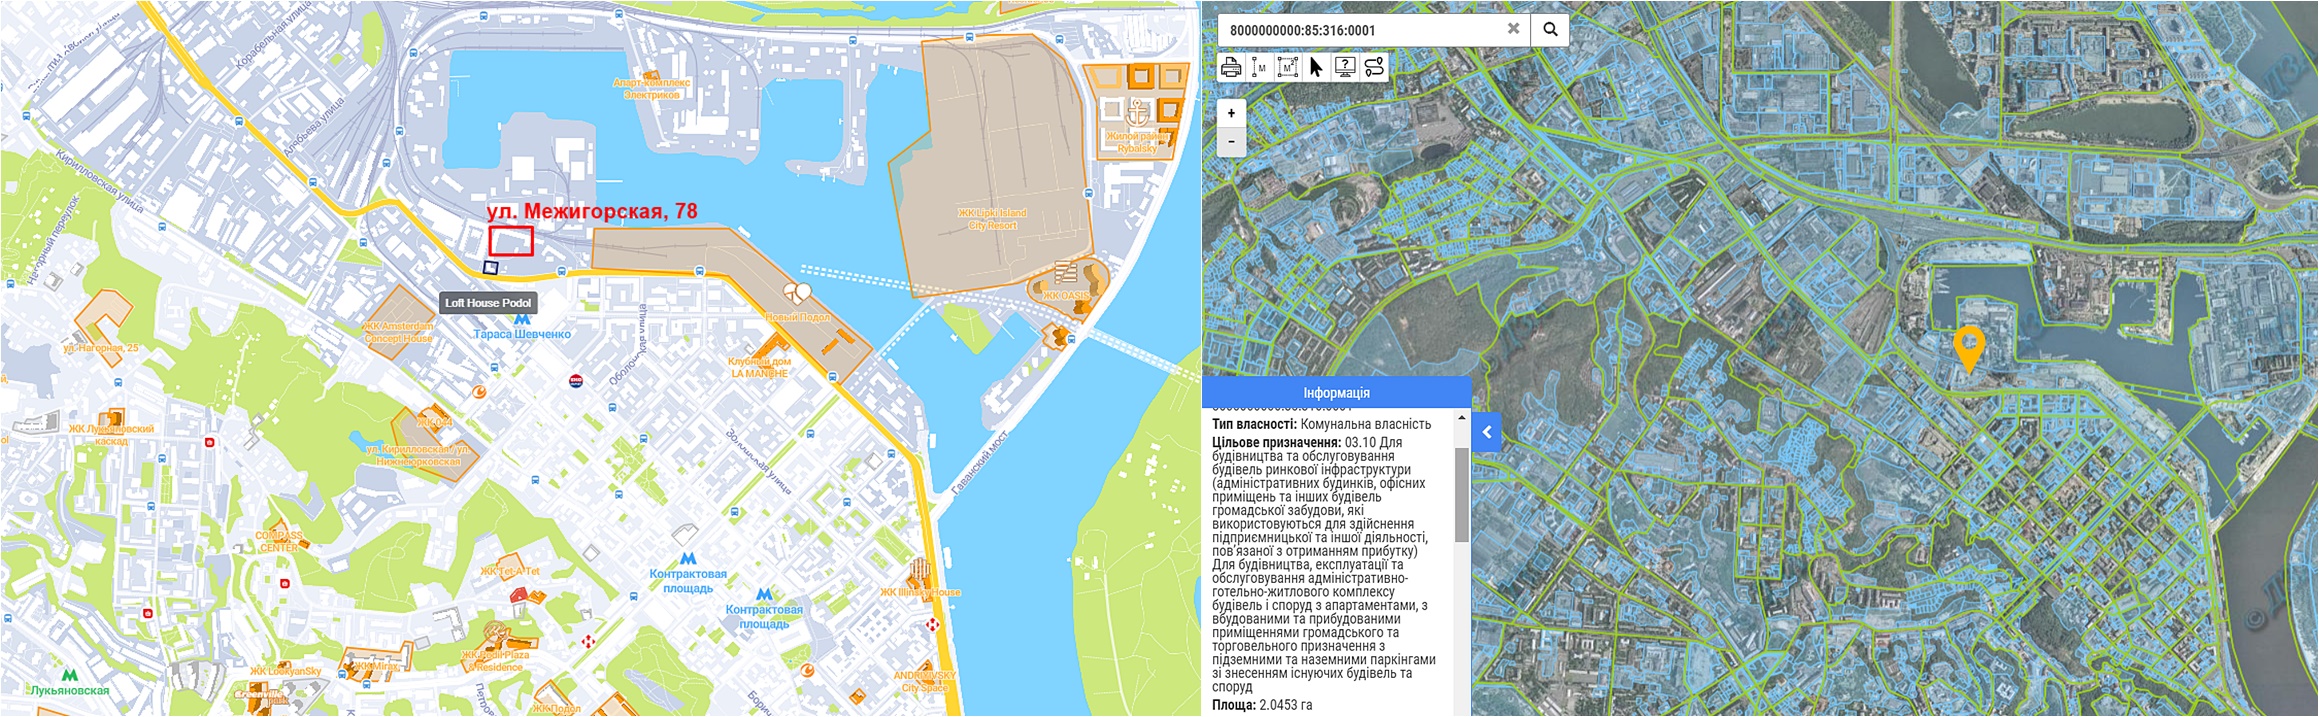 Проект реконструкции по ул. Межигорская, 78 данные кадастра и на карте